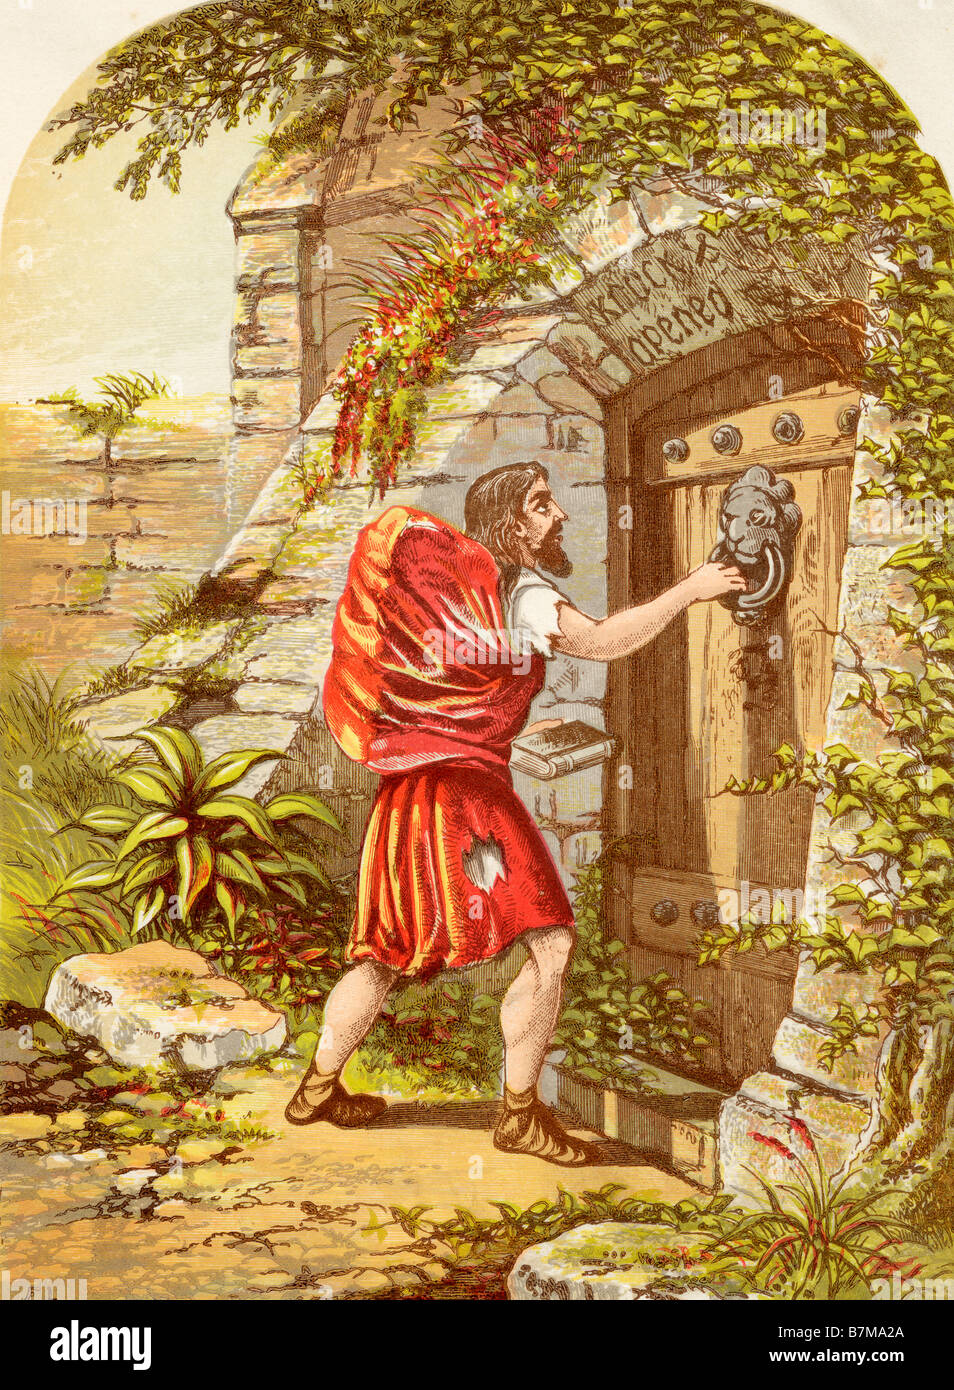 Christian en la puerta. Ilustración de un F Lydon. Del libro "El Progreso del Peregrino de John Bunyan, publicado c. 1880. Foto de stock